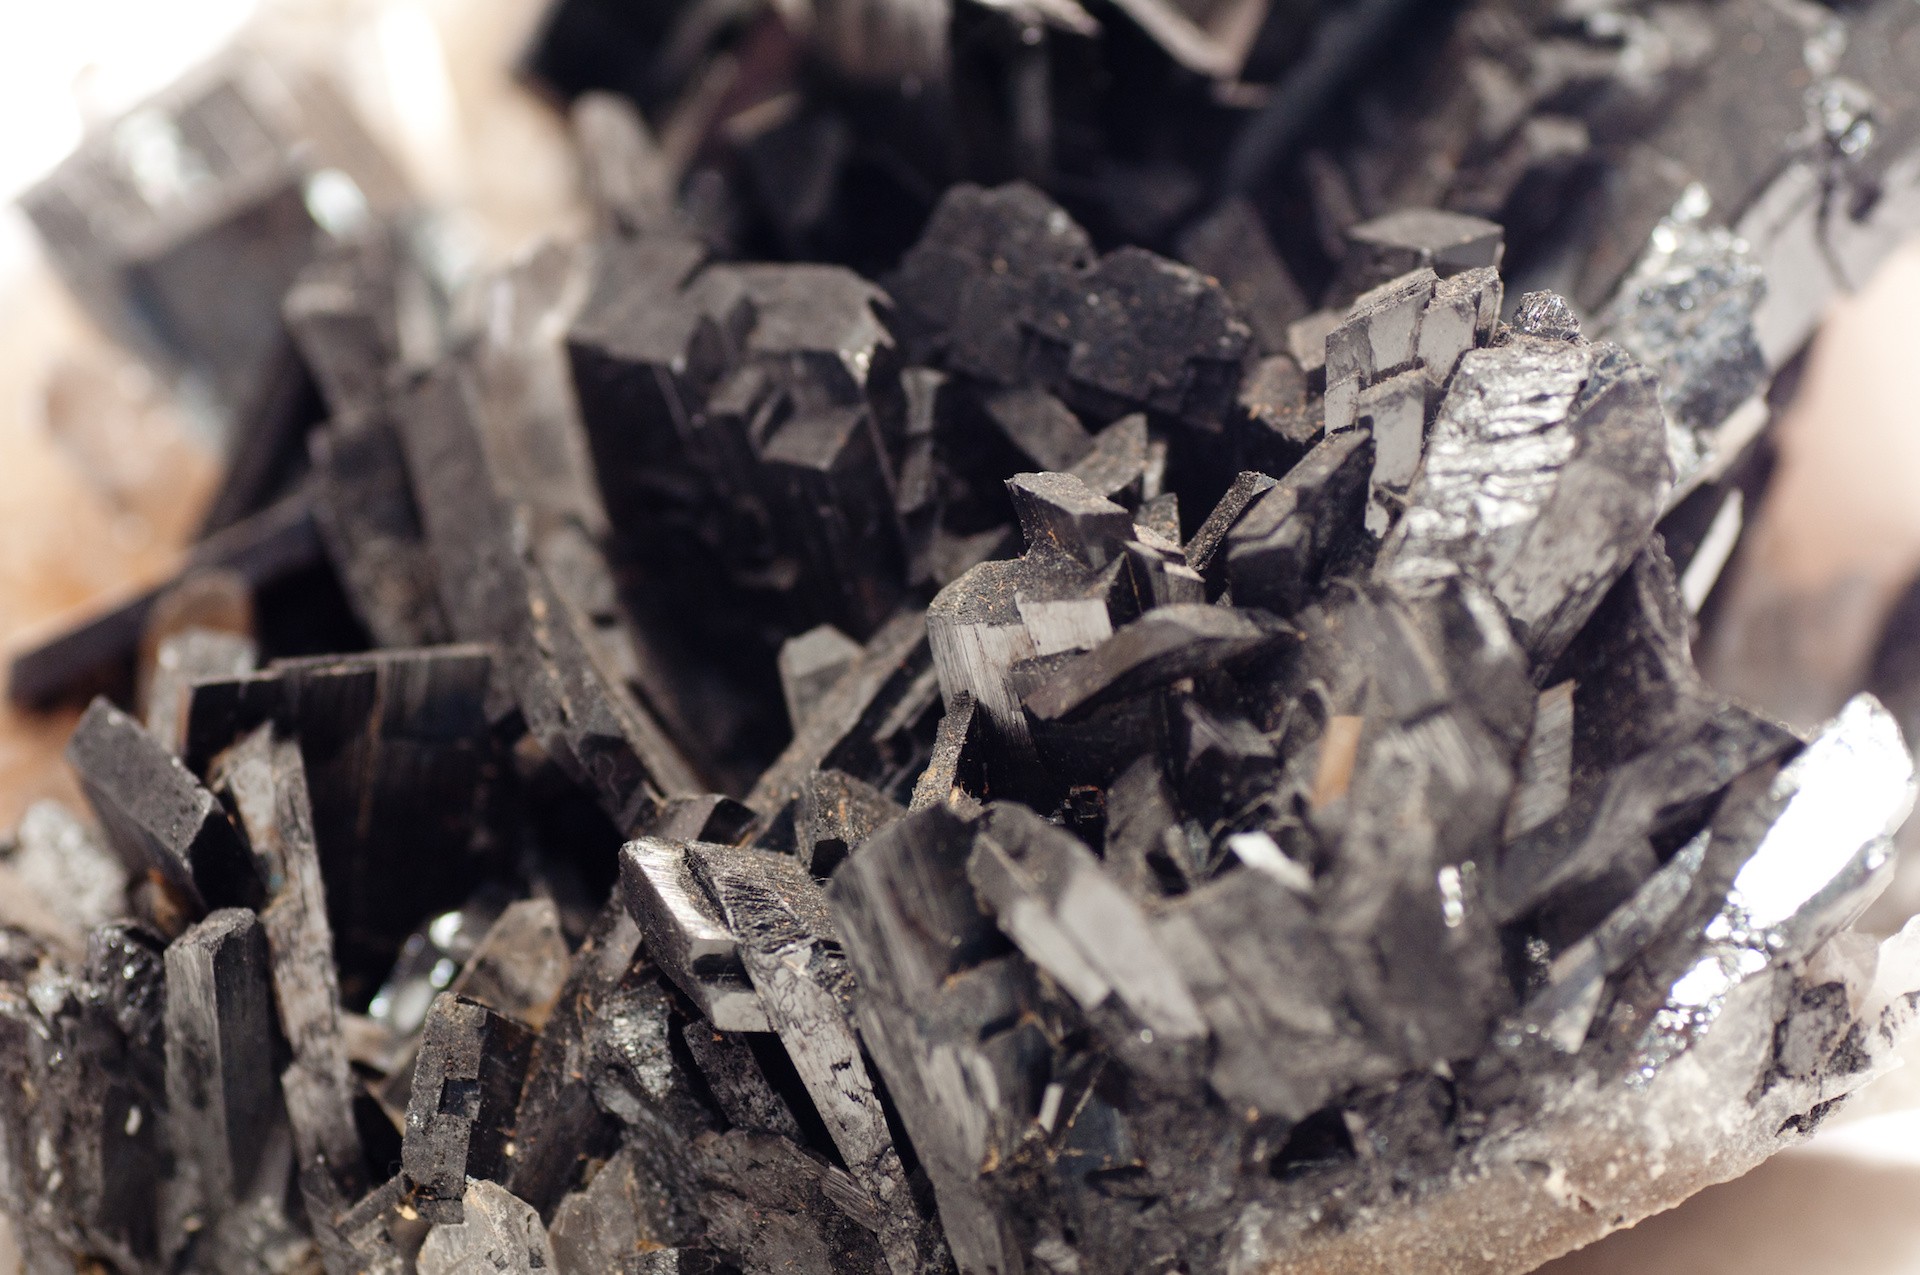 Carboneto de tungsténio: o que é e como é lixado